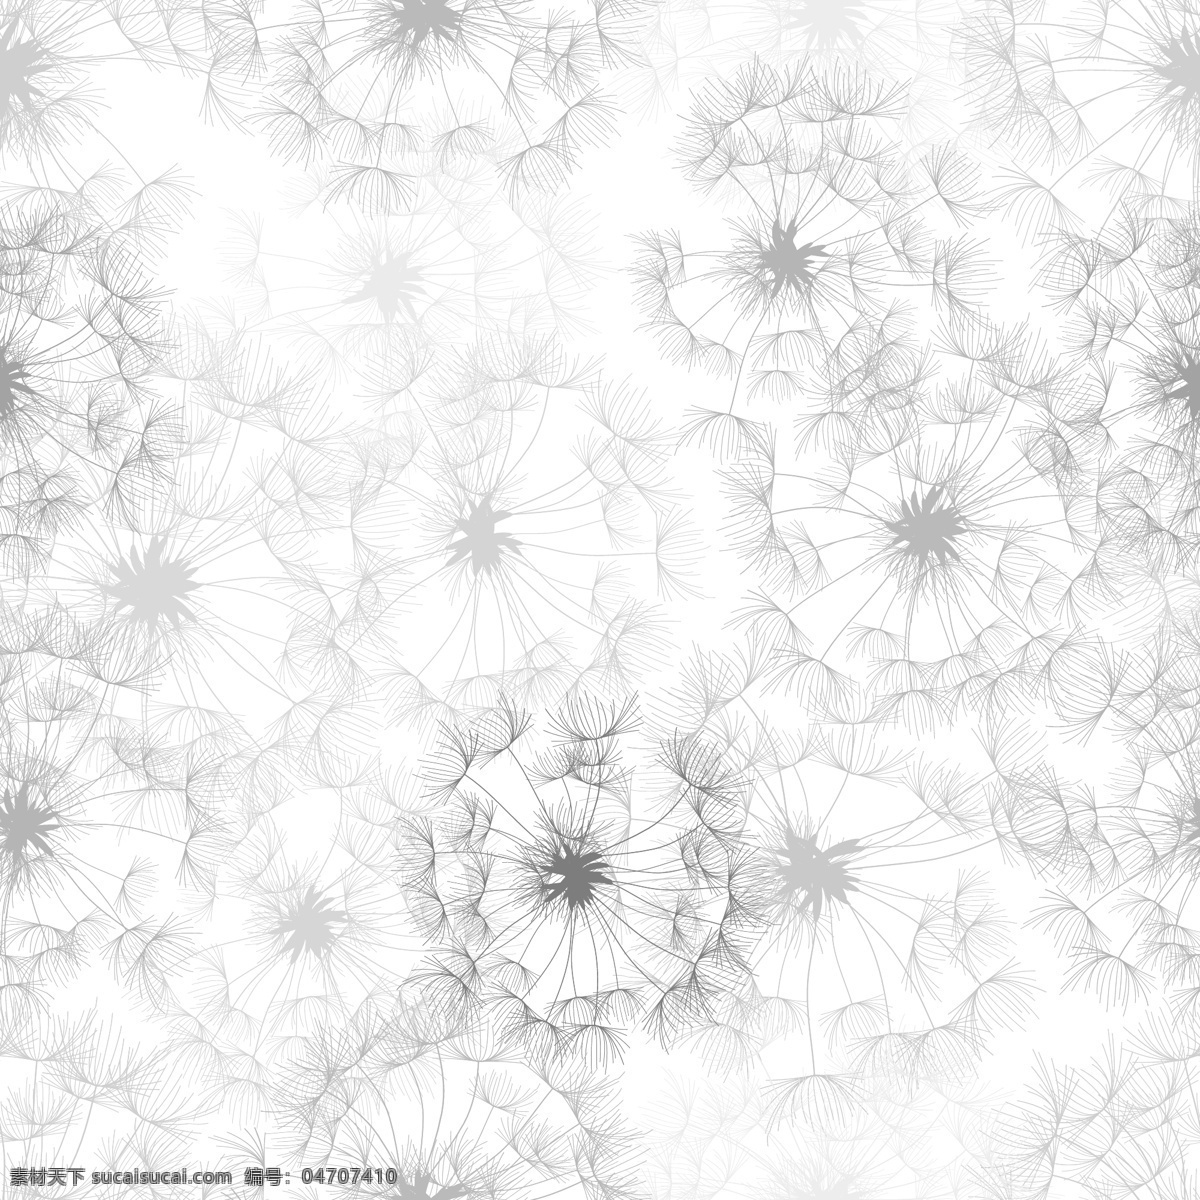 抽象 矢量 黑白 花卉 背景 抽象花卉背景 抽象背景 黑白花卉背景